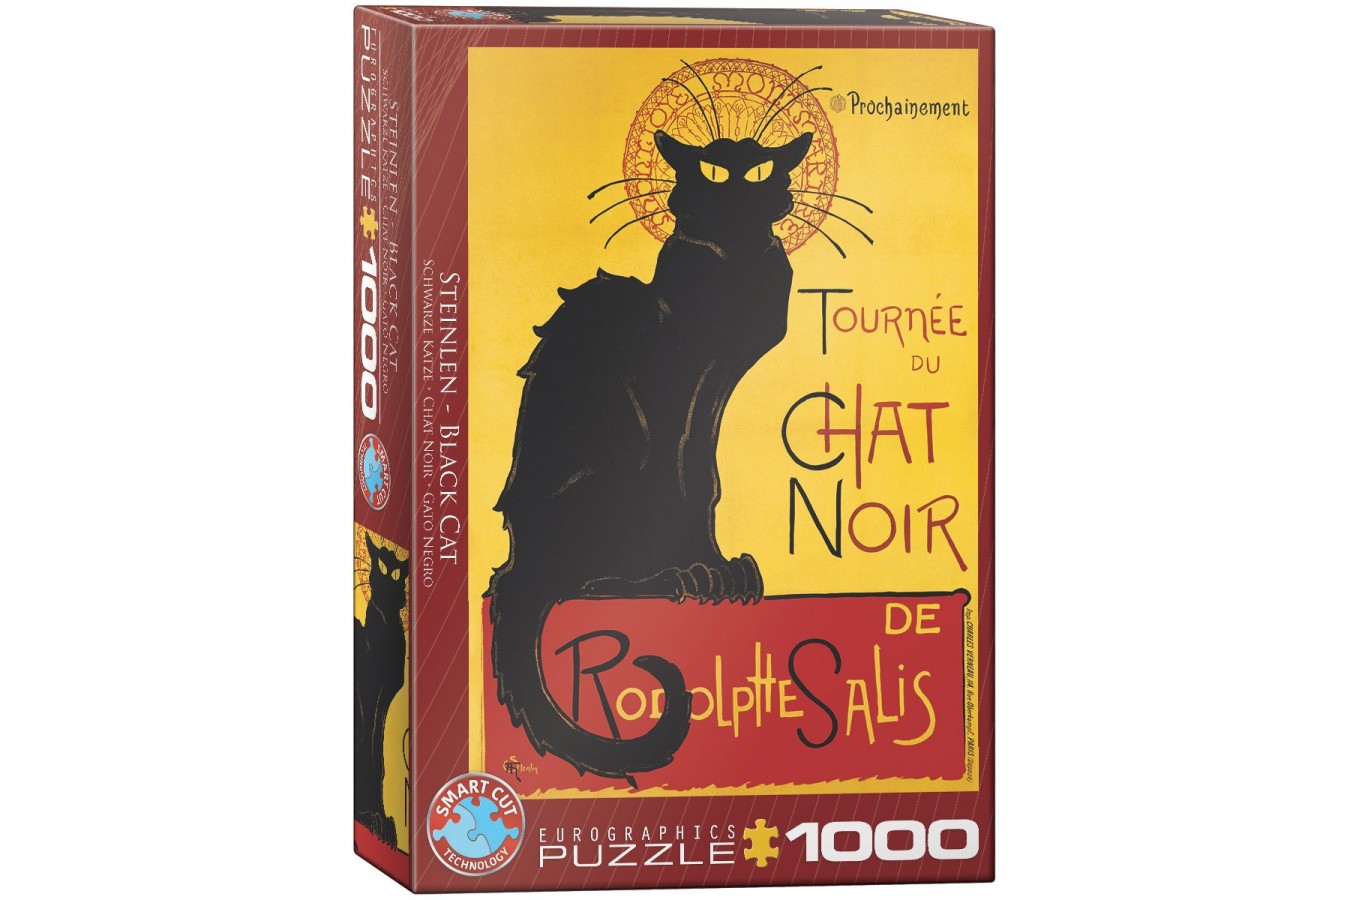 Puzzle Eurographics - Tournee du Chat Noir, 1000 piese (6000-1399)